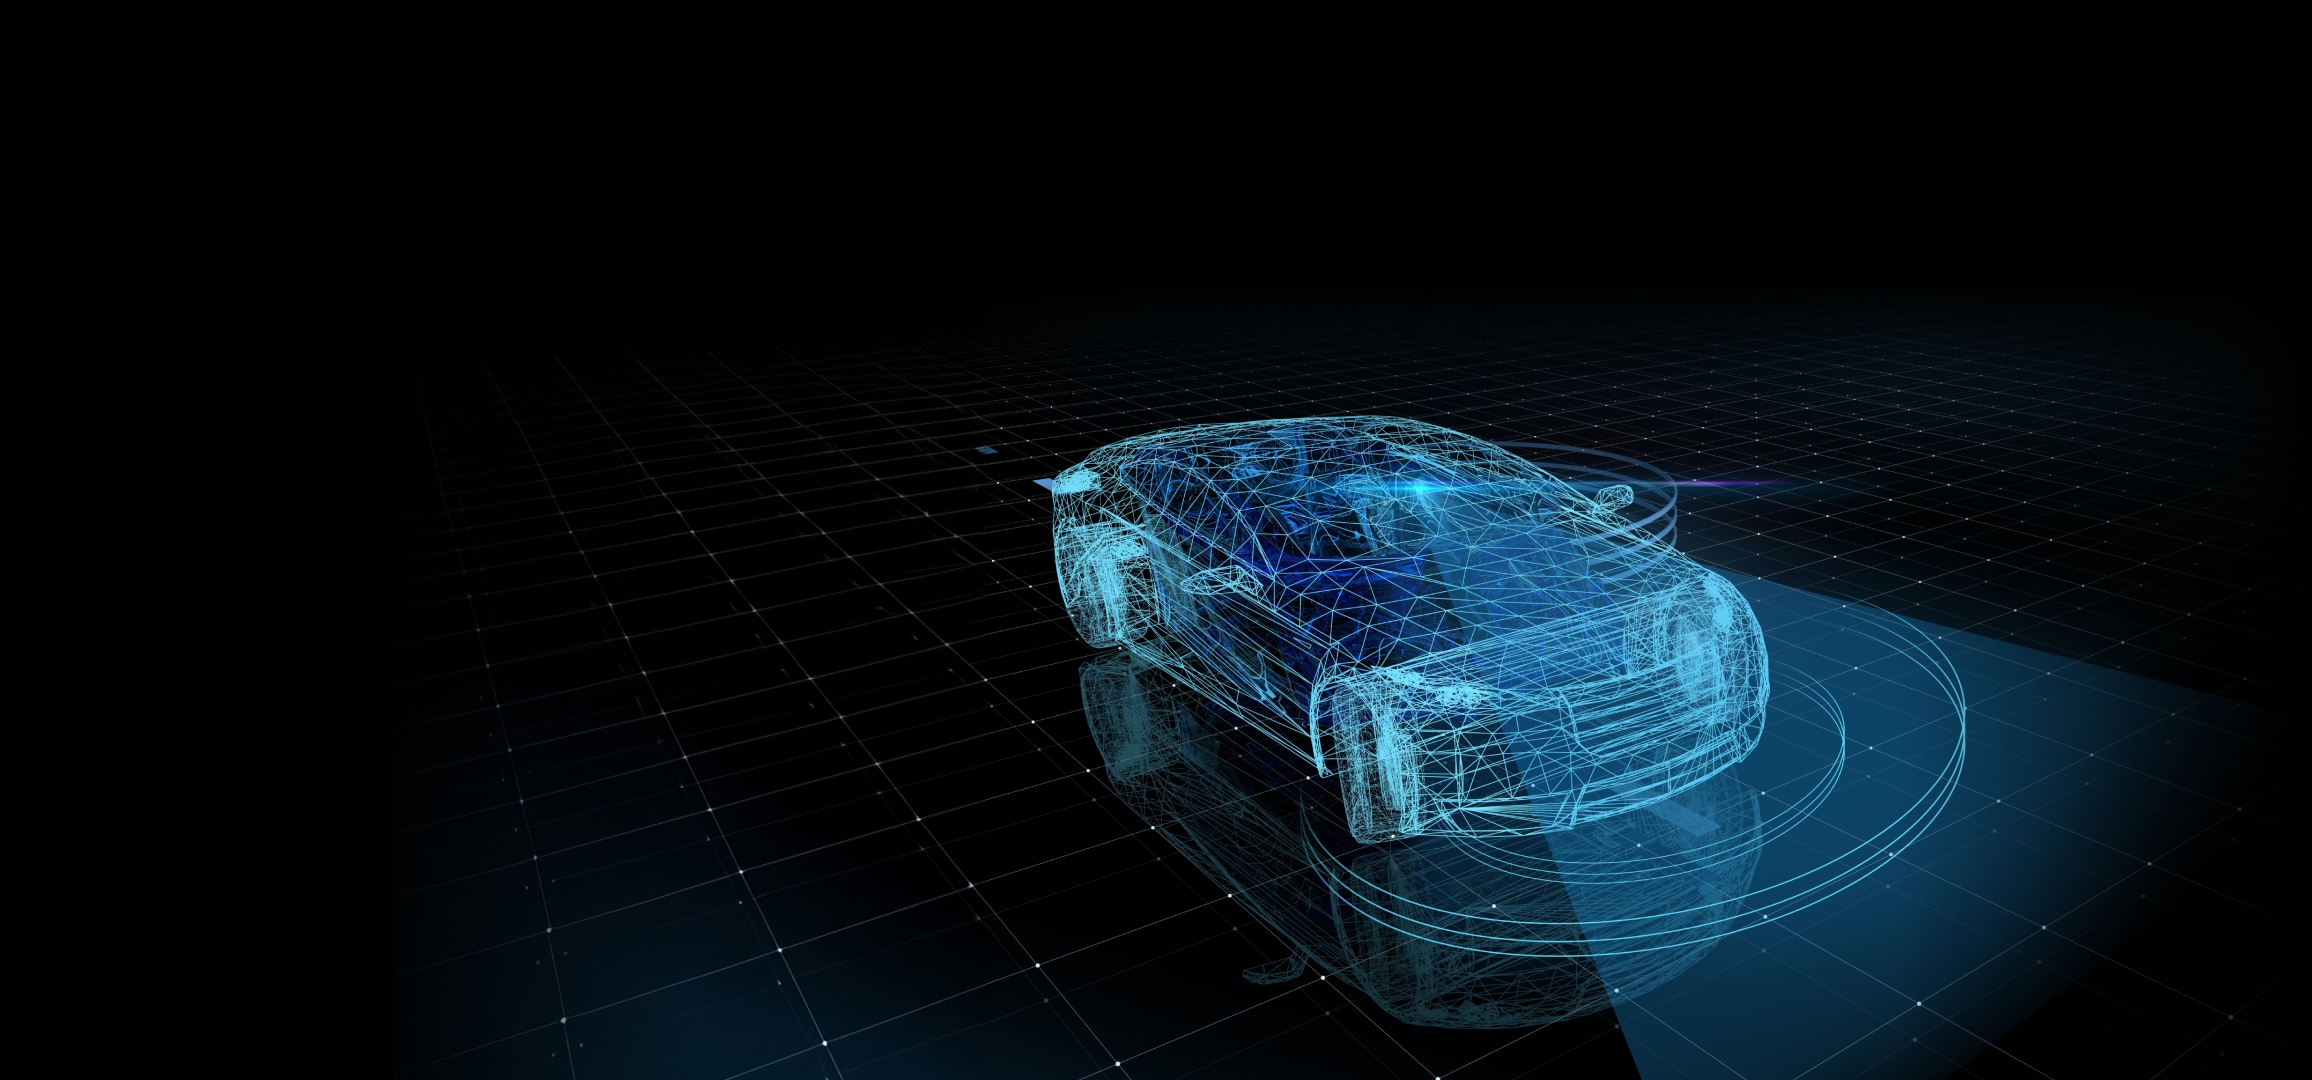 멀티 디스플레이가 장착된 차량 내부 인포테인먼트 시스템의 설명 이미지